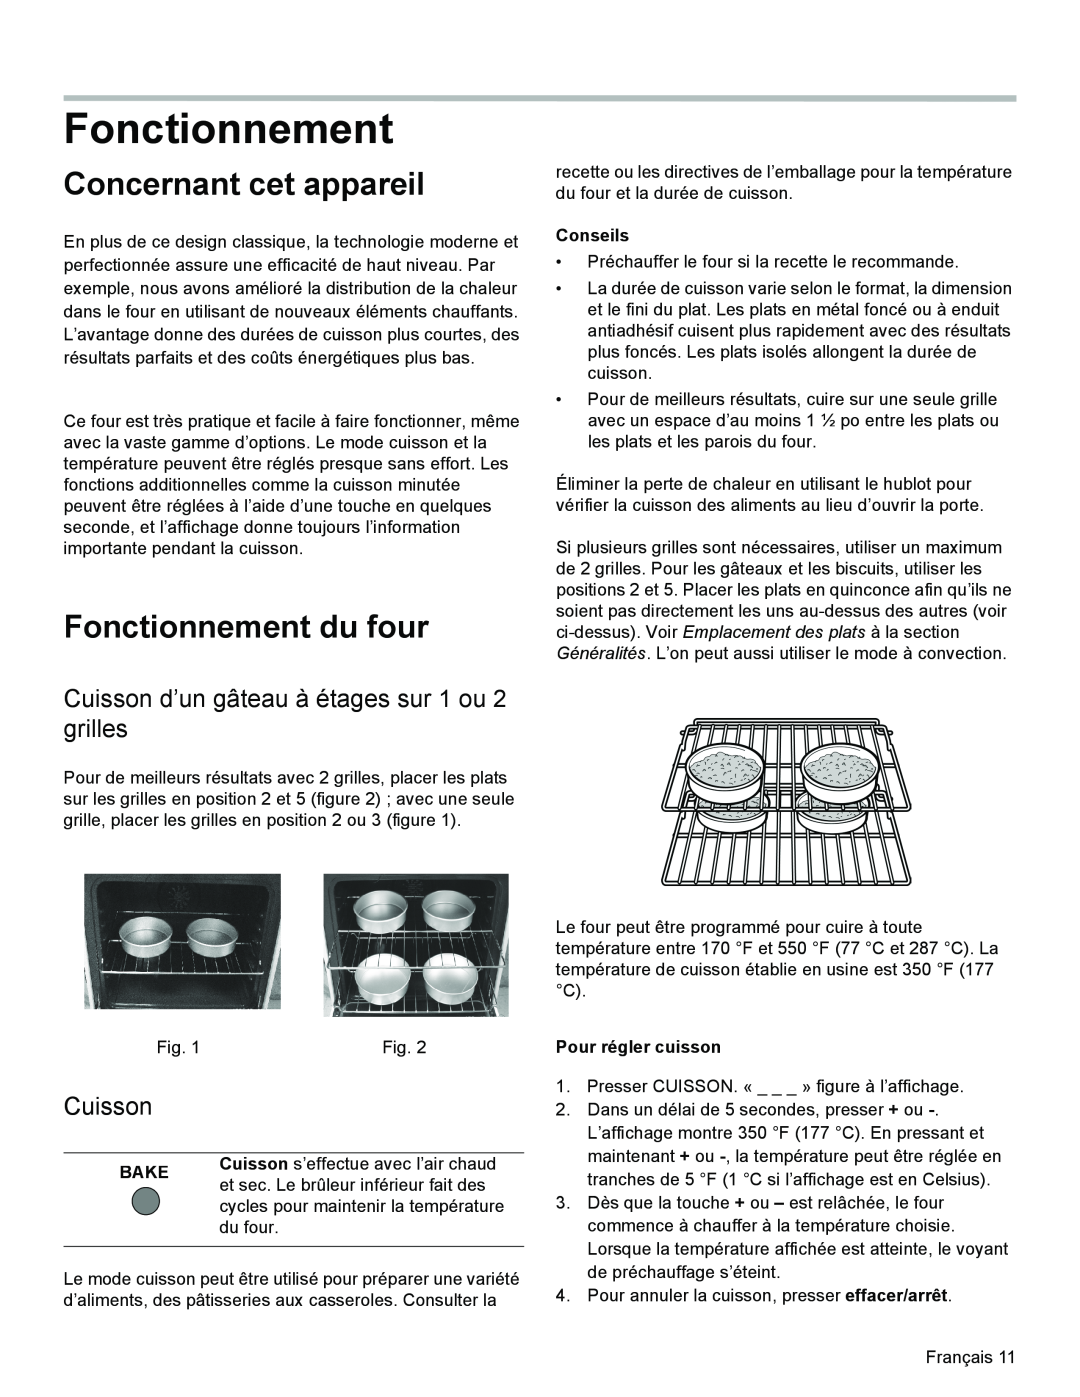 Bosch Appliances HES3063U manual Concernant cet appareil, Fonctionnement du four, Cuisson, Conseils, Bake 